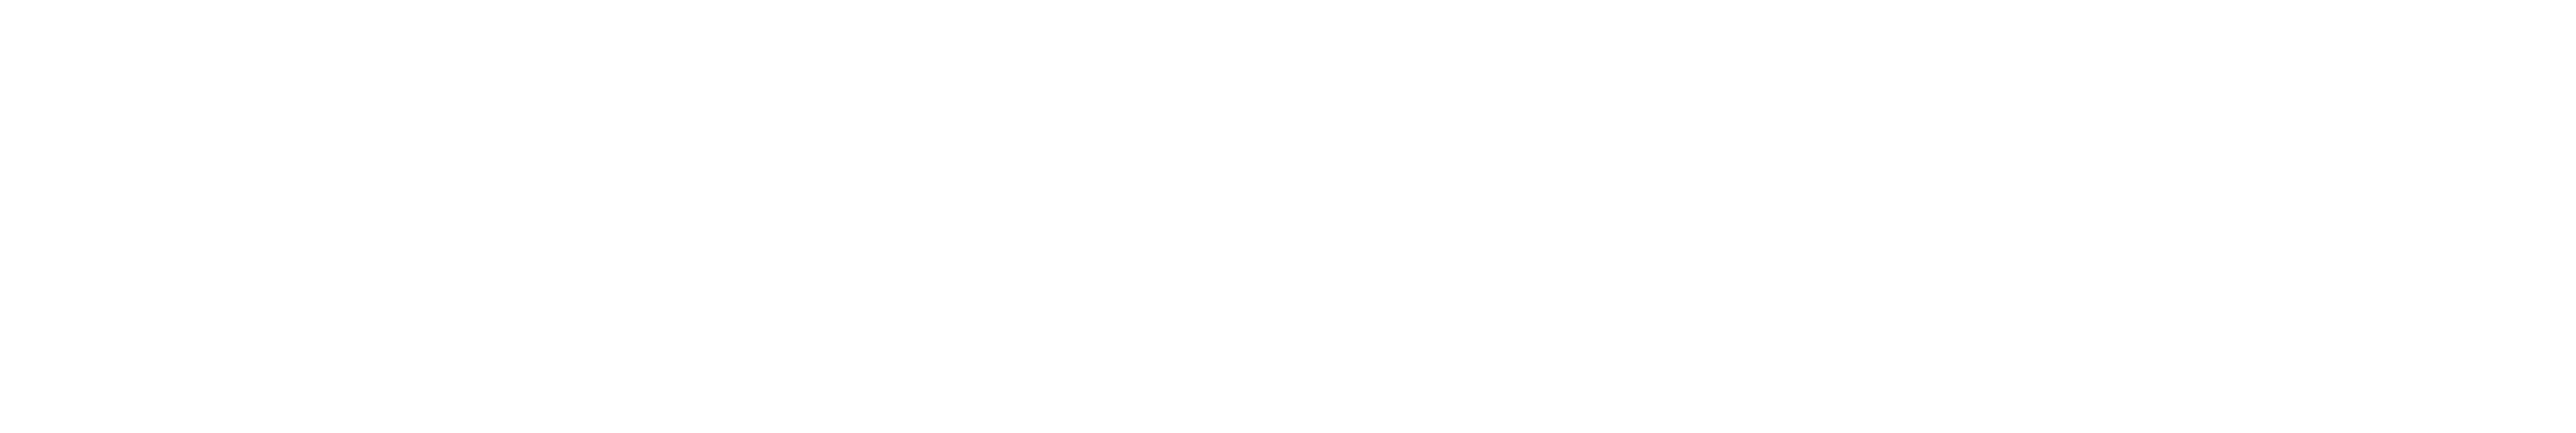 hub cloud – All News updates 